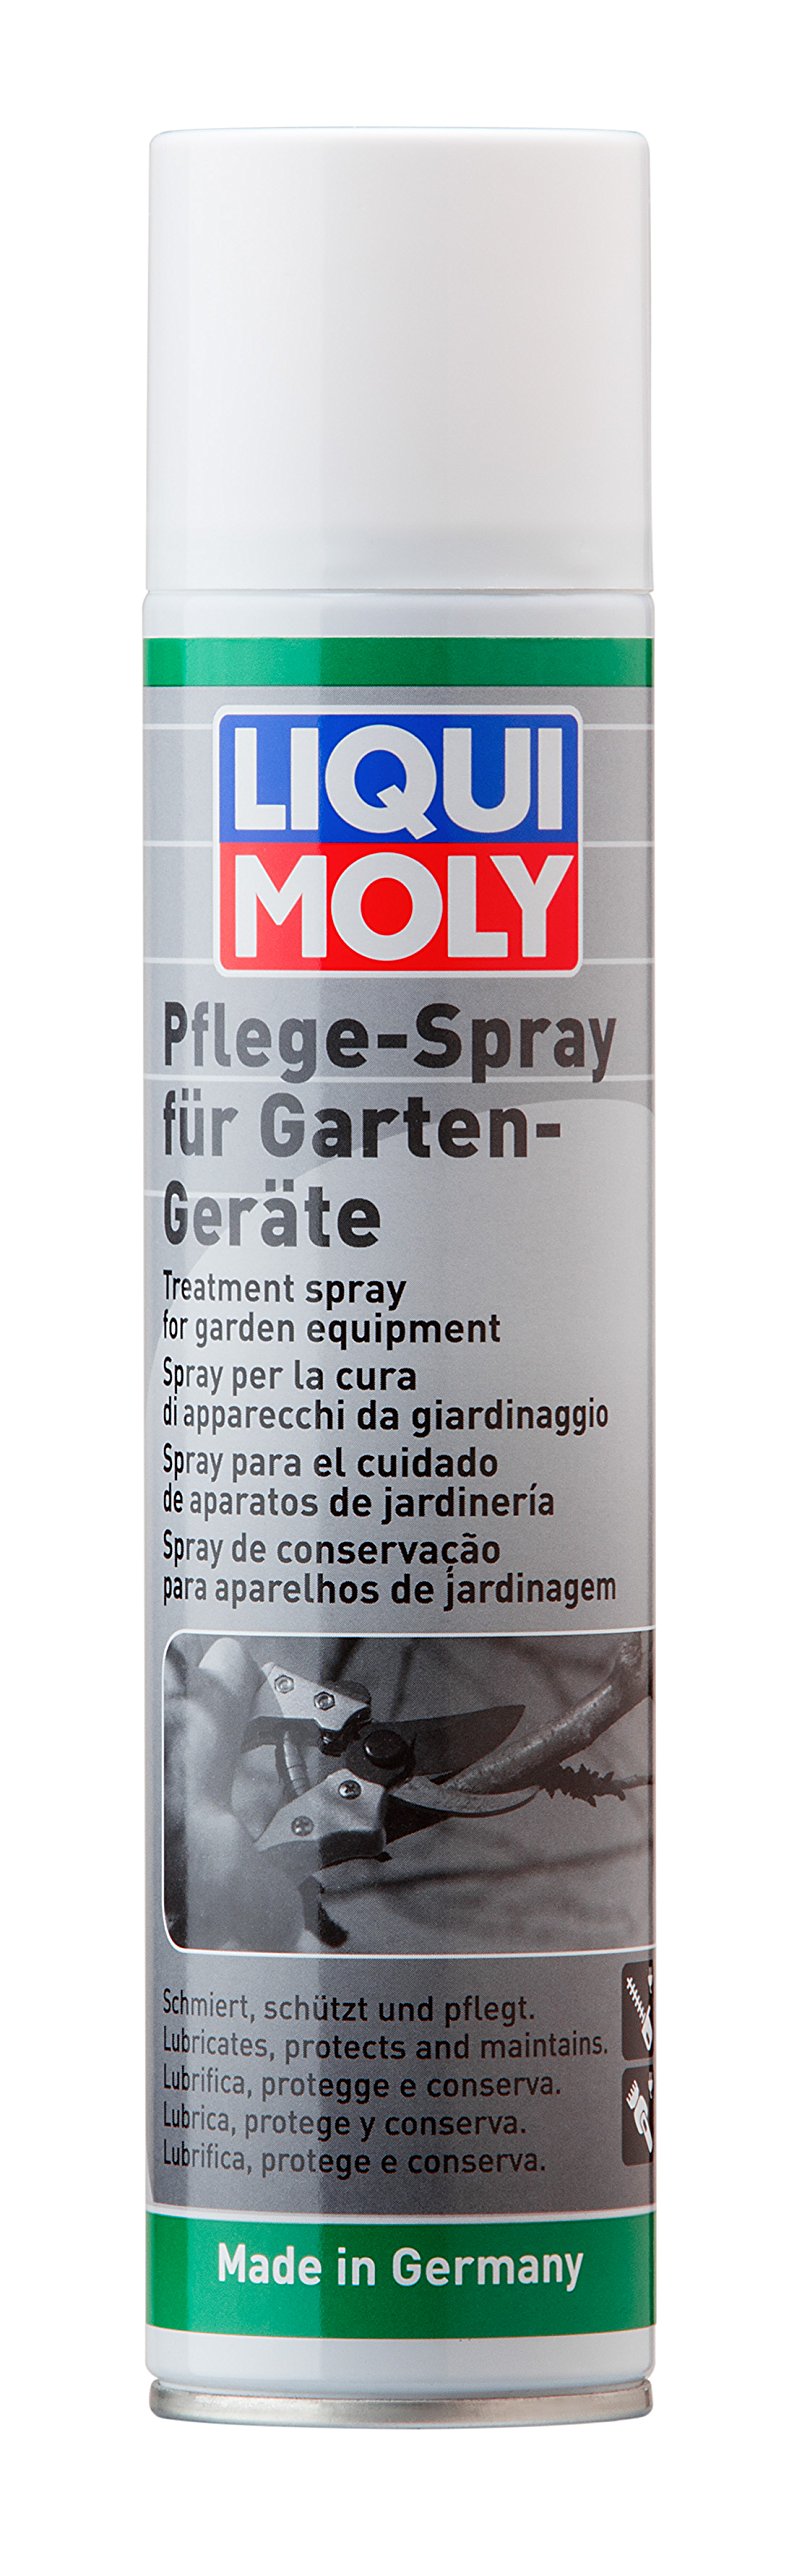 LIQUI MOLY Pflegespray für Gartengeräte | 300 ml | Gartengeräte-Pflege | Art.-Nr.: 1615 von Liqui Moly